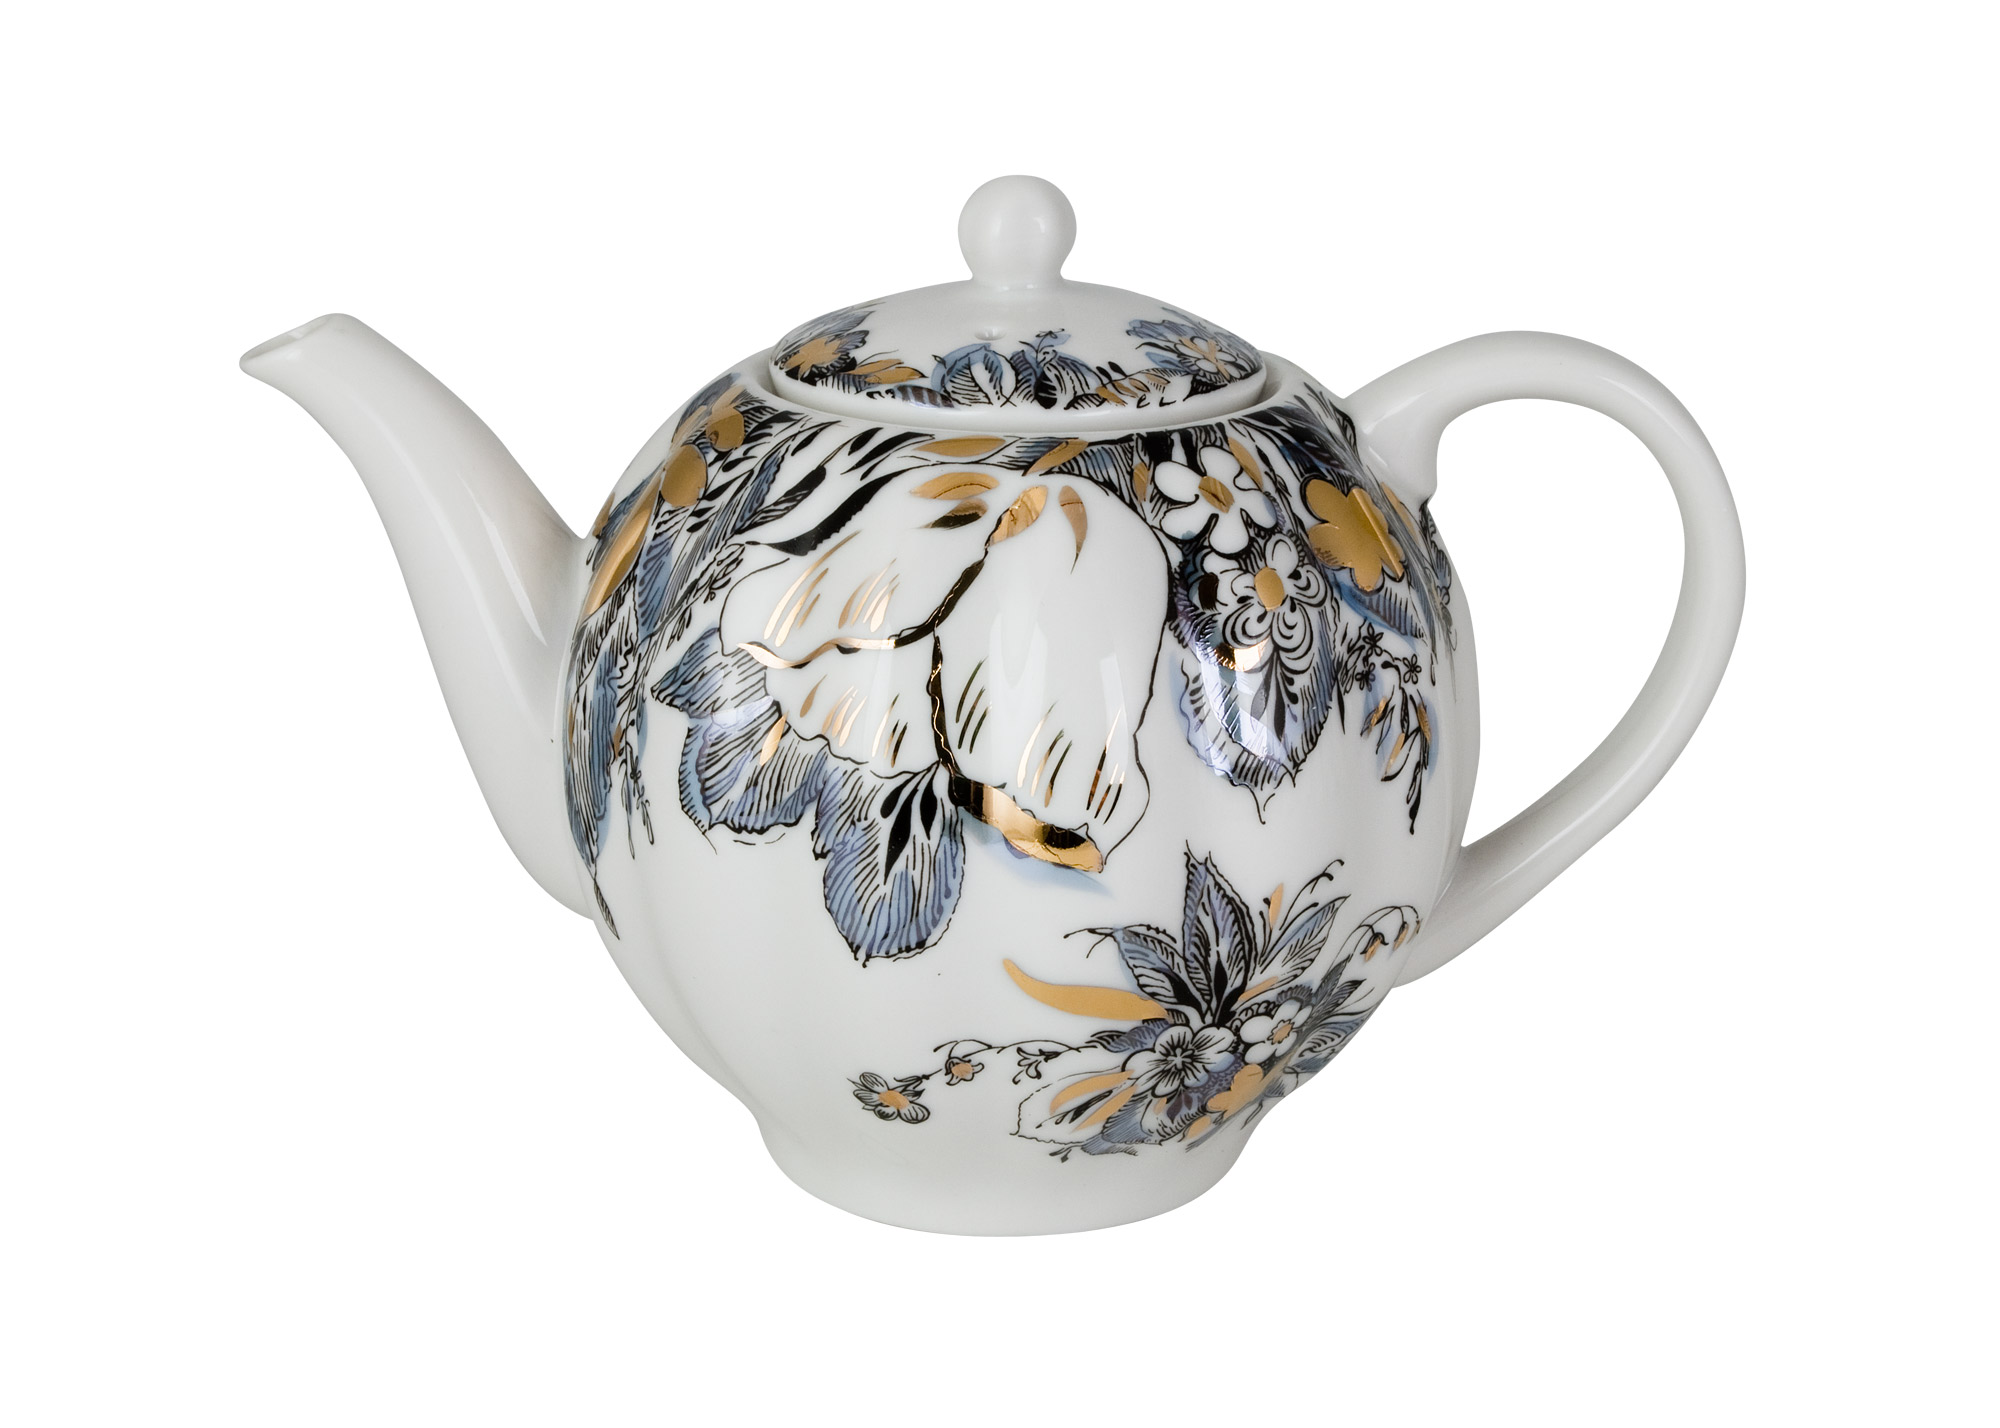 Buy Reflections Teapot, 2 1/2 cups at GoldenCockerel.com